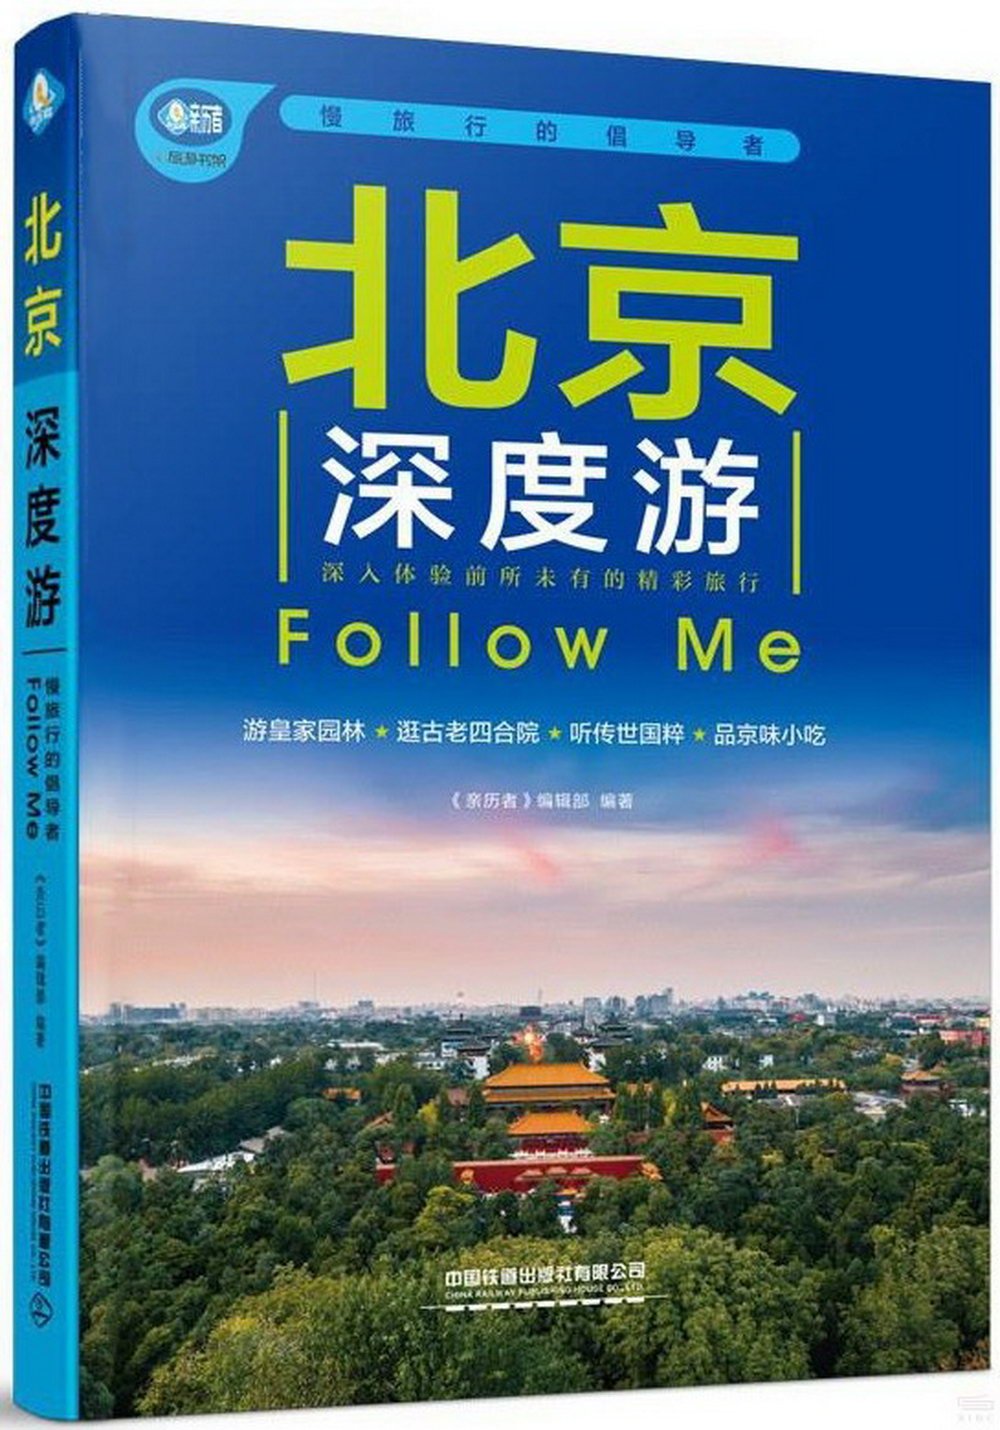 北京深度游Follow Me